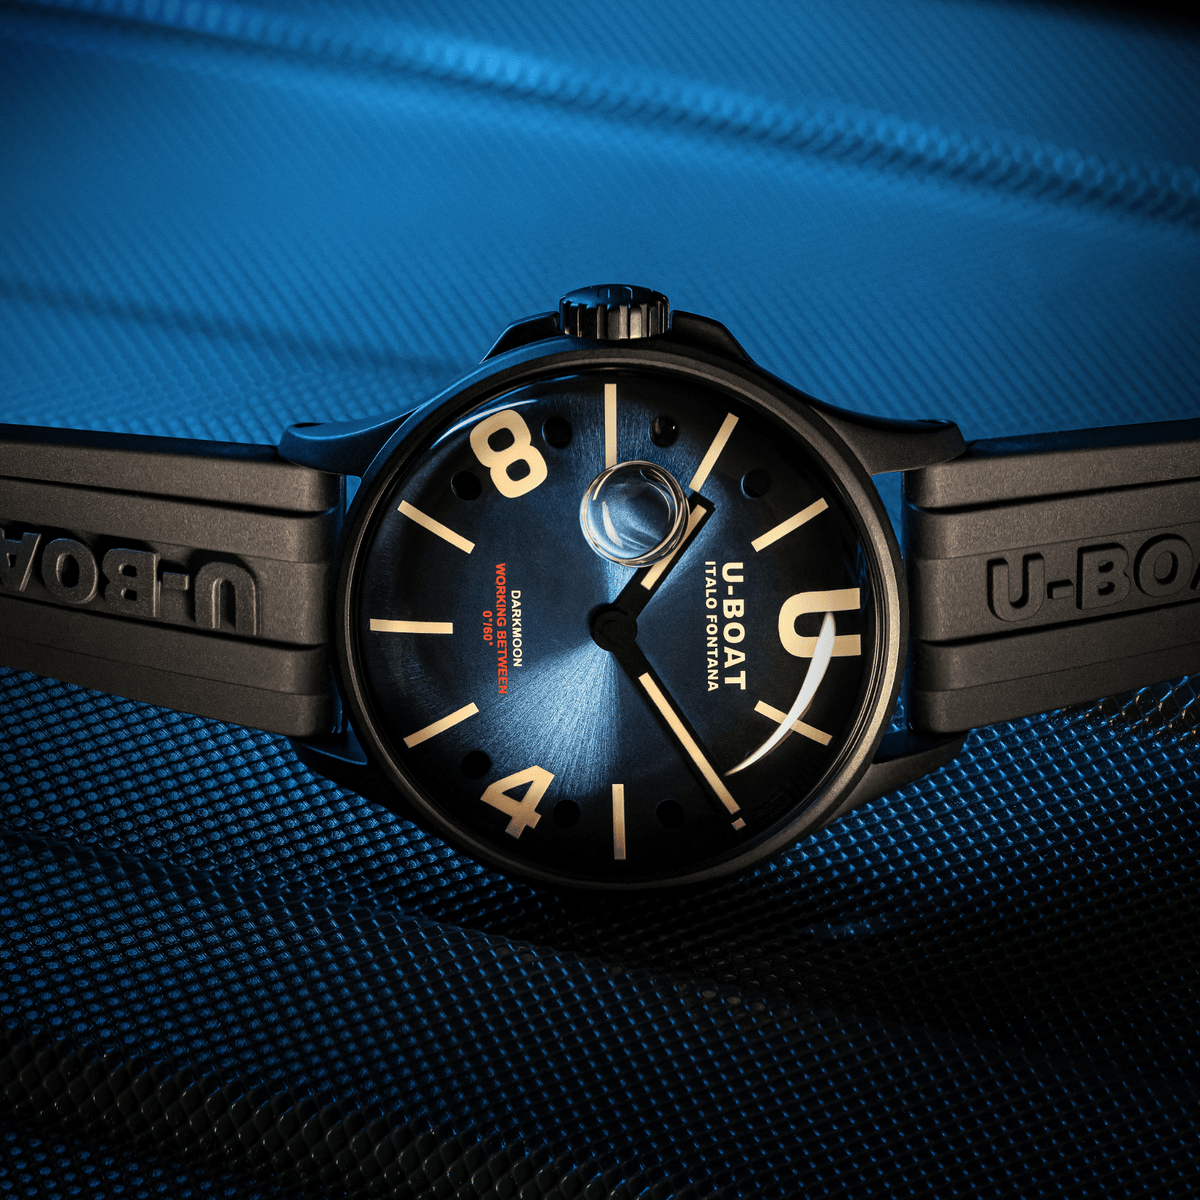 U-BOAT Darkmoon 40mm Blue ipb soleil 9020/B